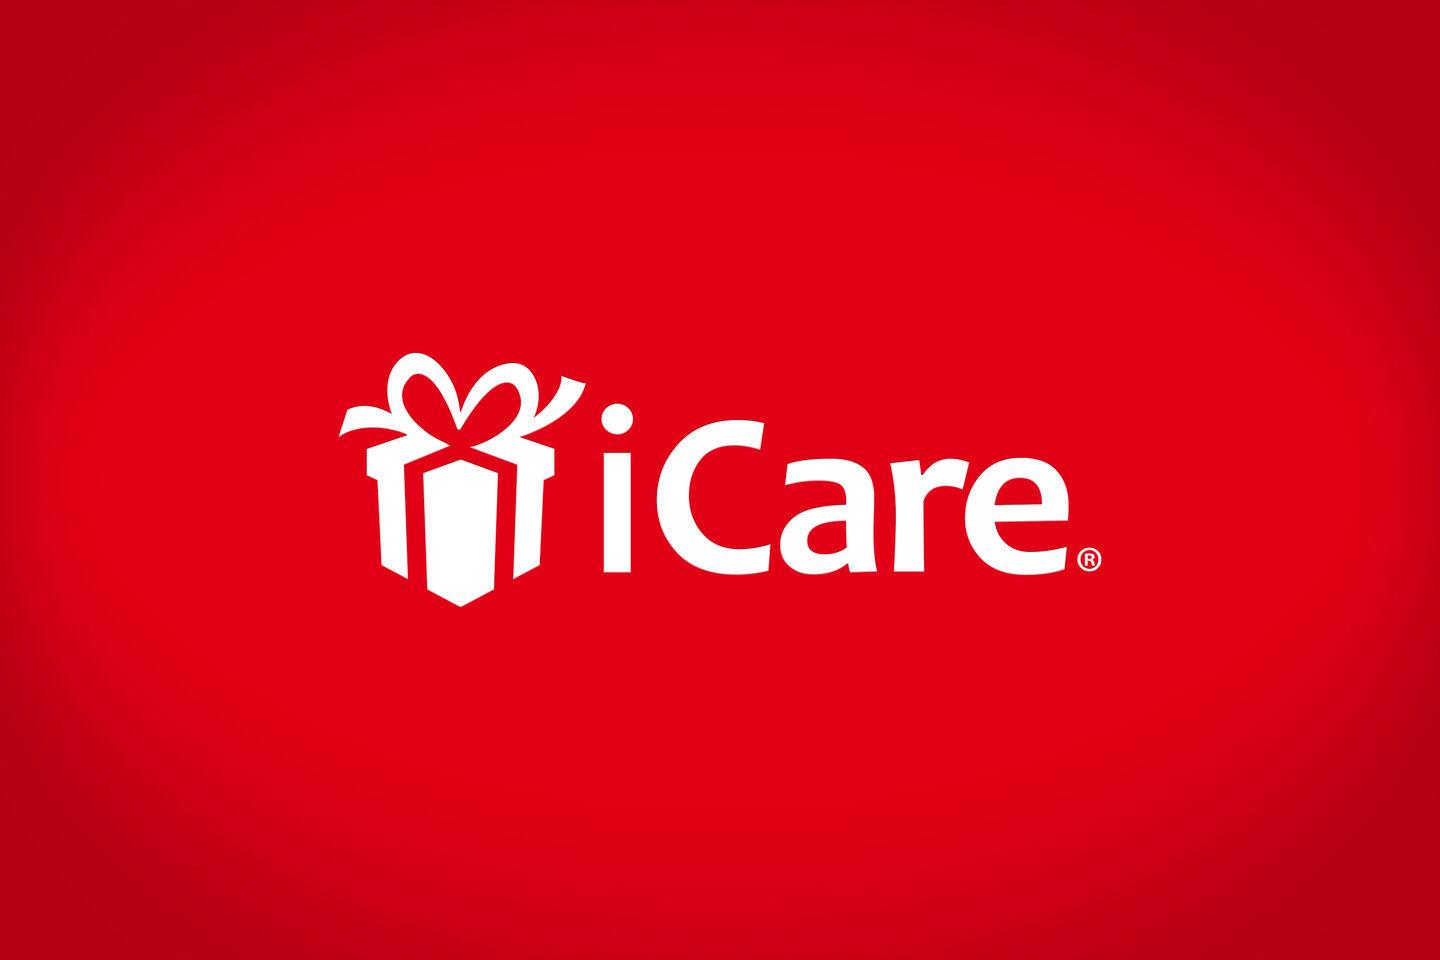 Logo iCare trên nền đỏ